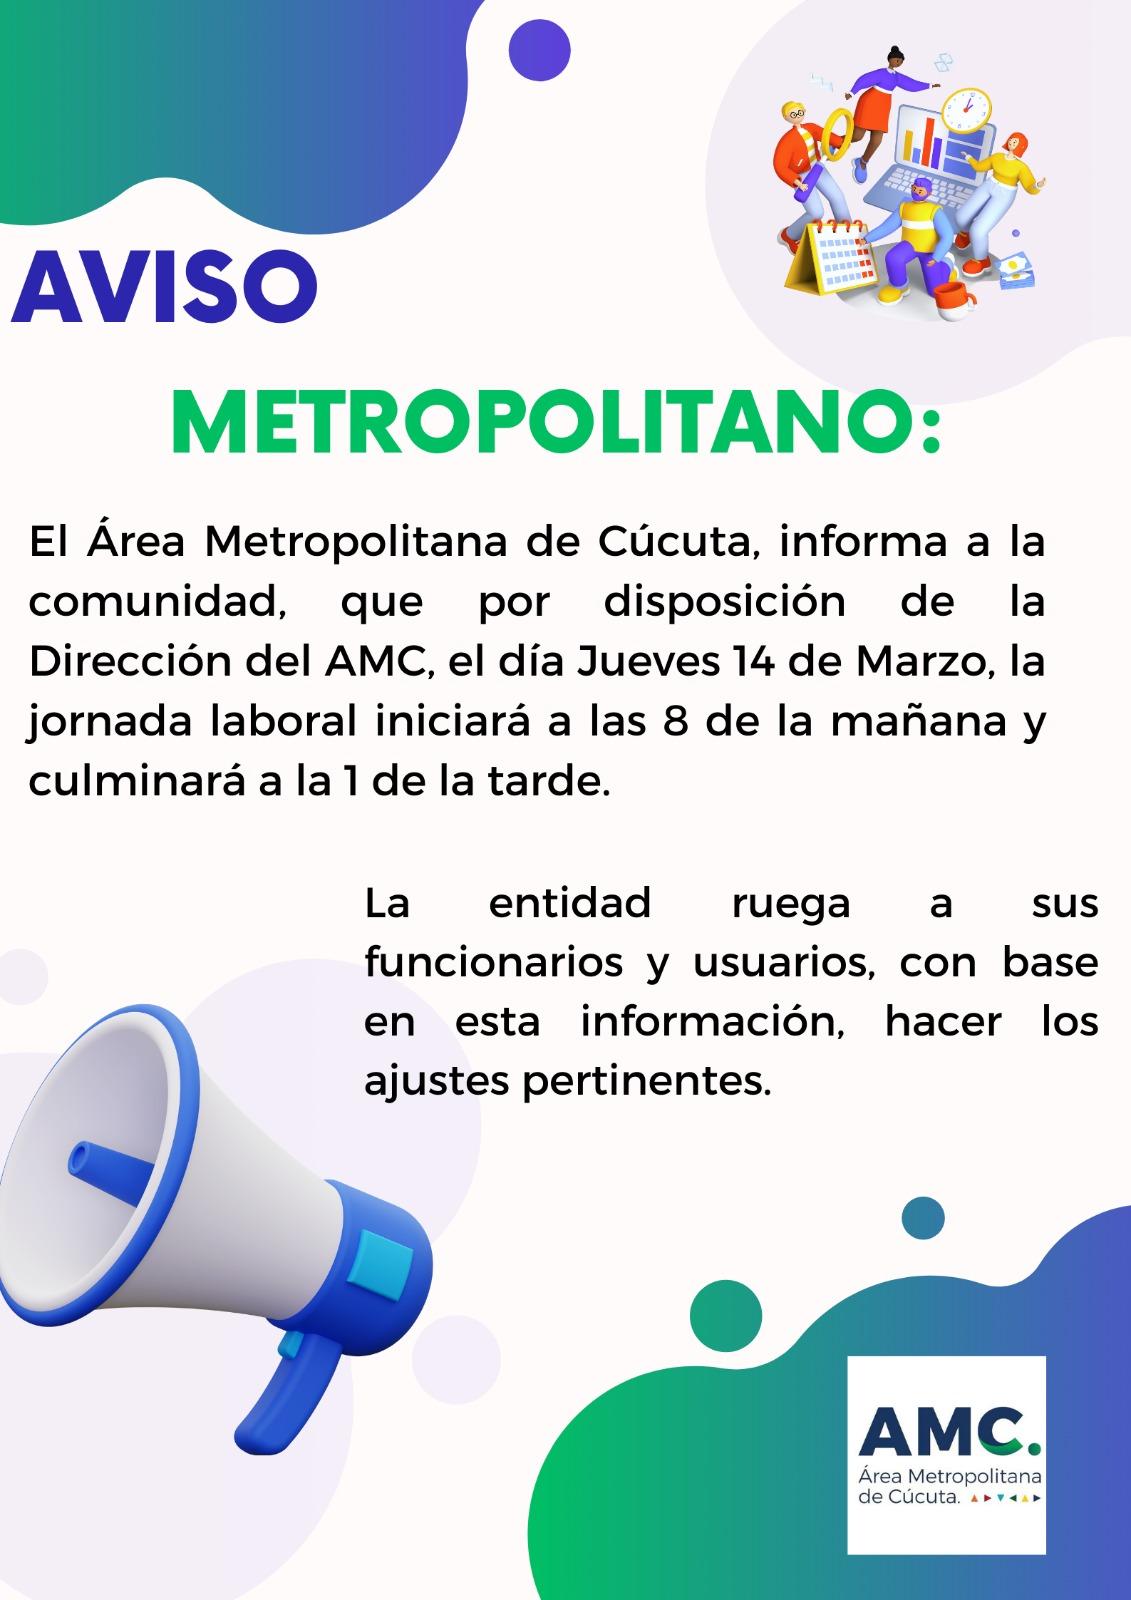 Aviso: Área Metropolitana de Cúcuta modifica la jornada laboral el día Jueves 14 de Marzo